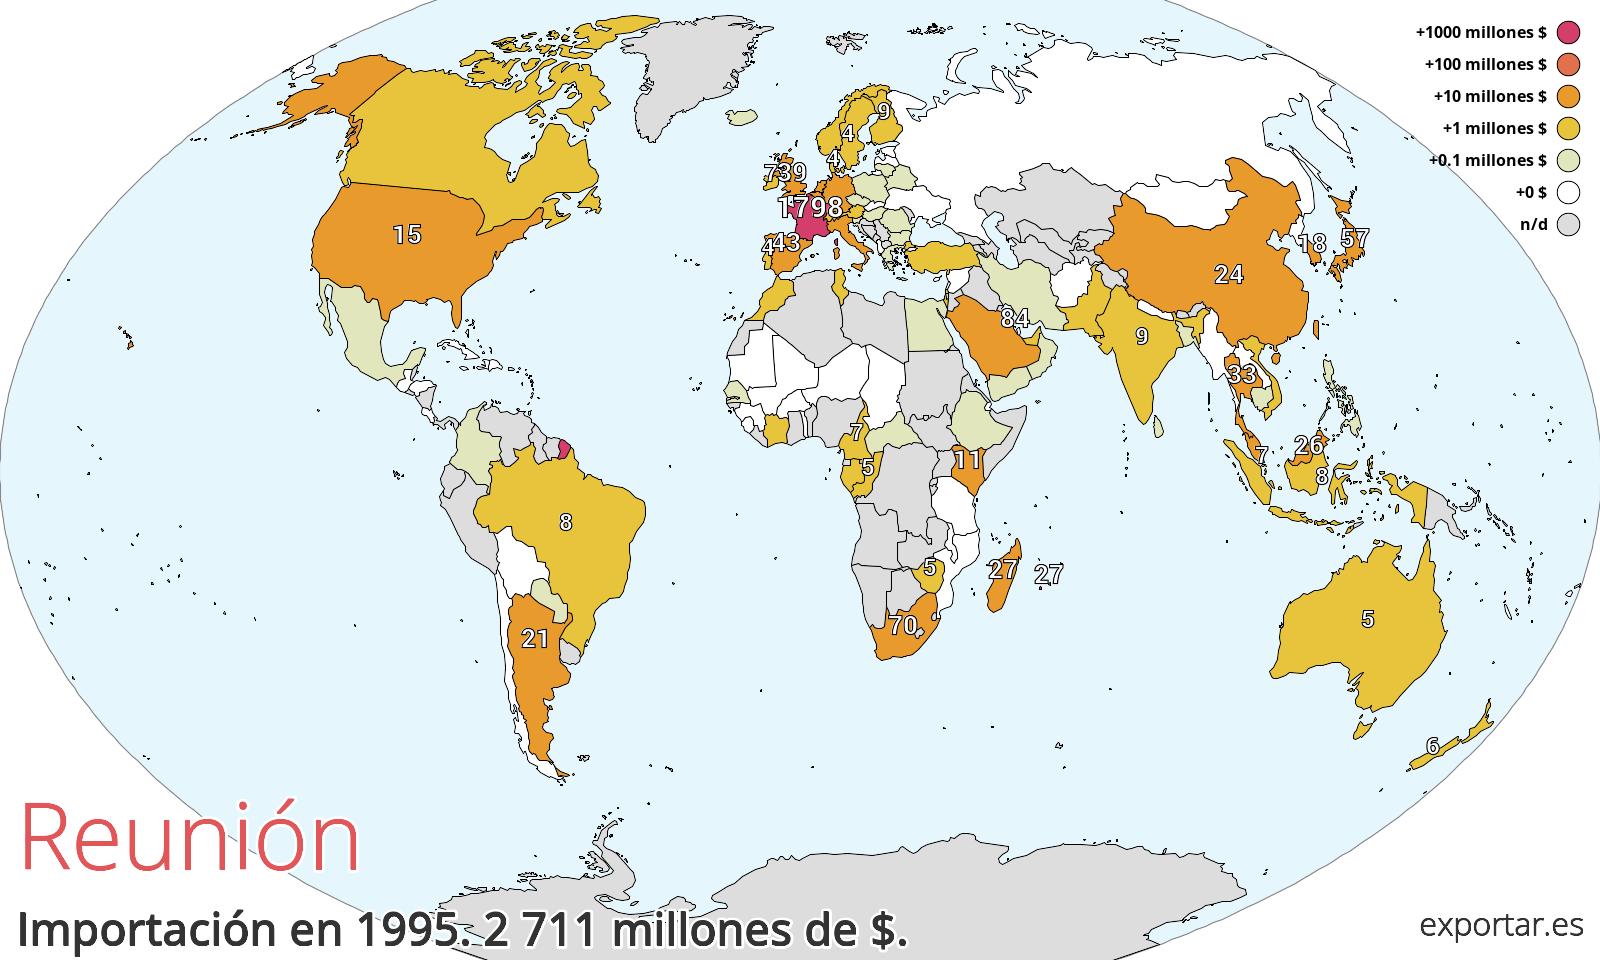 Mapa de importación de Reunión en 1995.